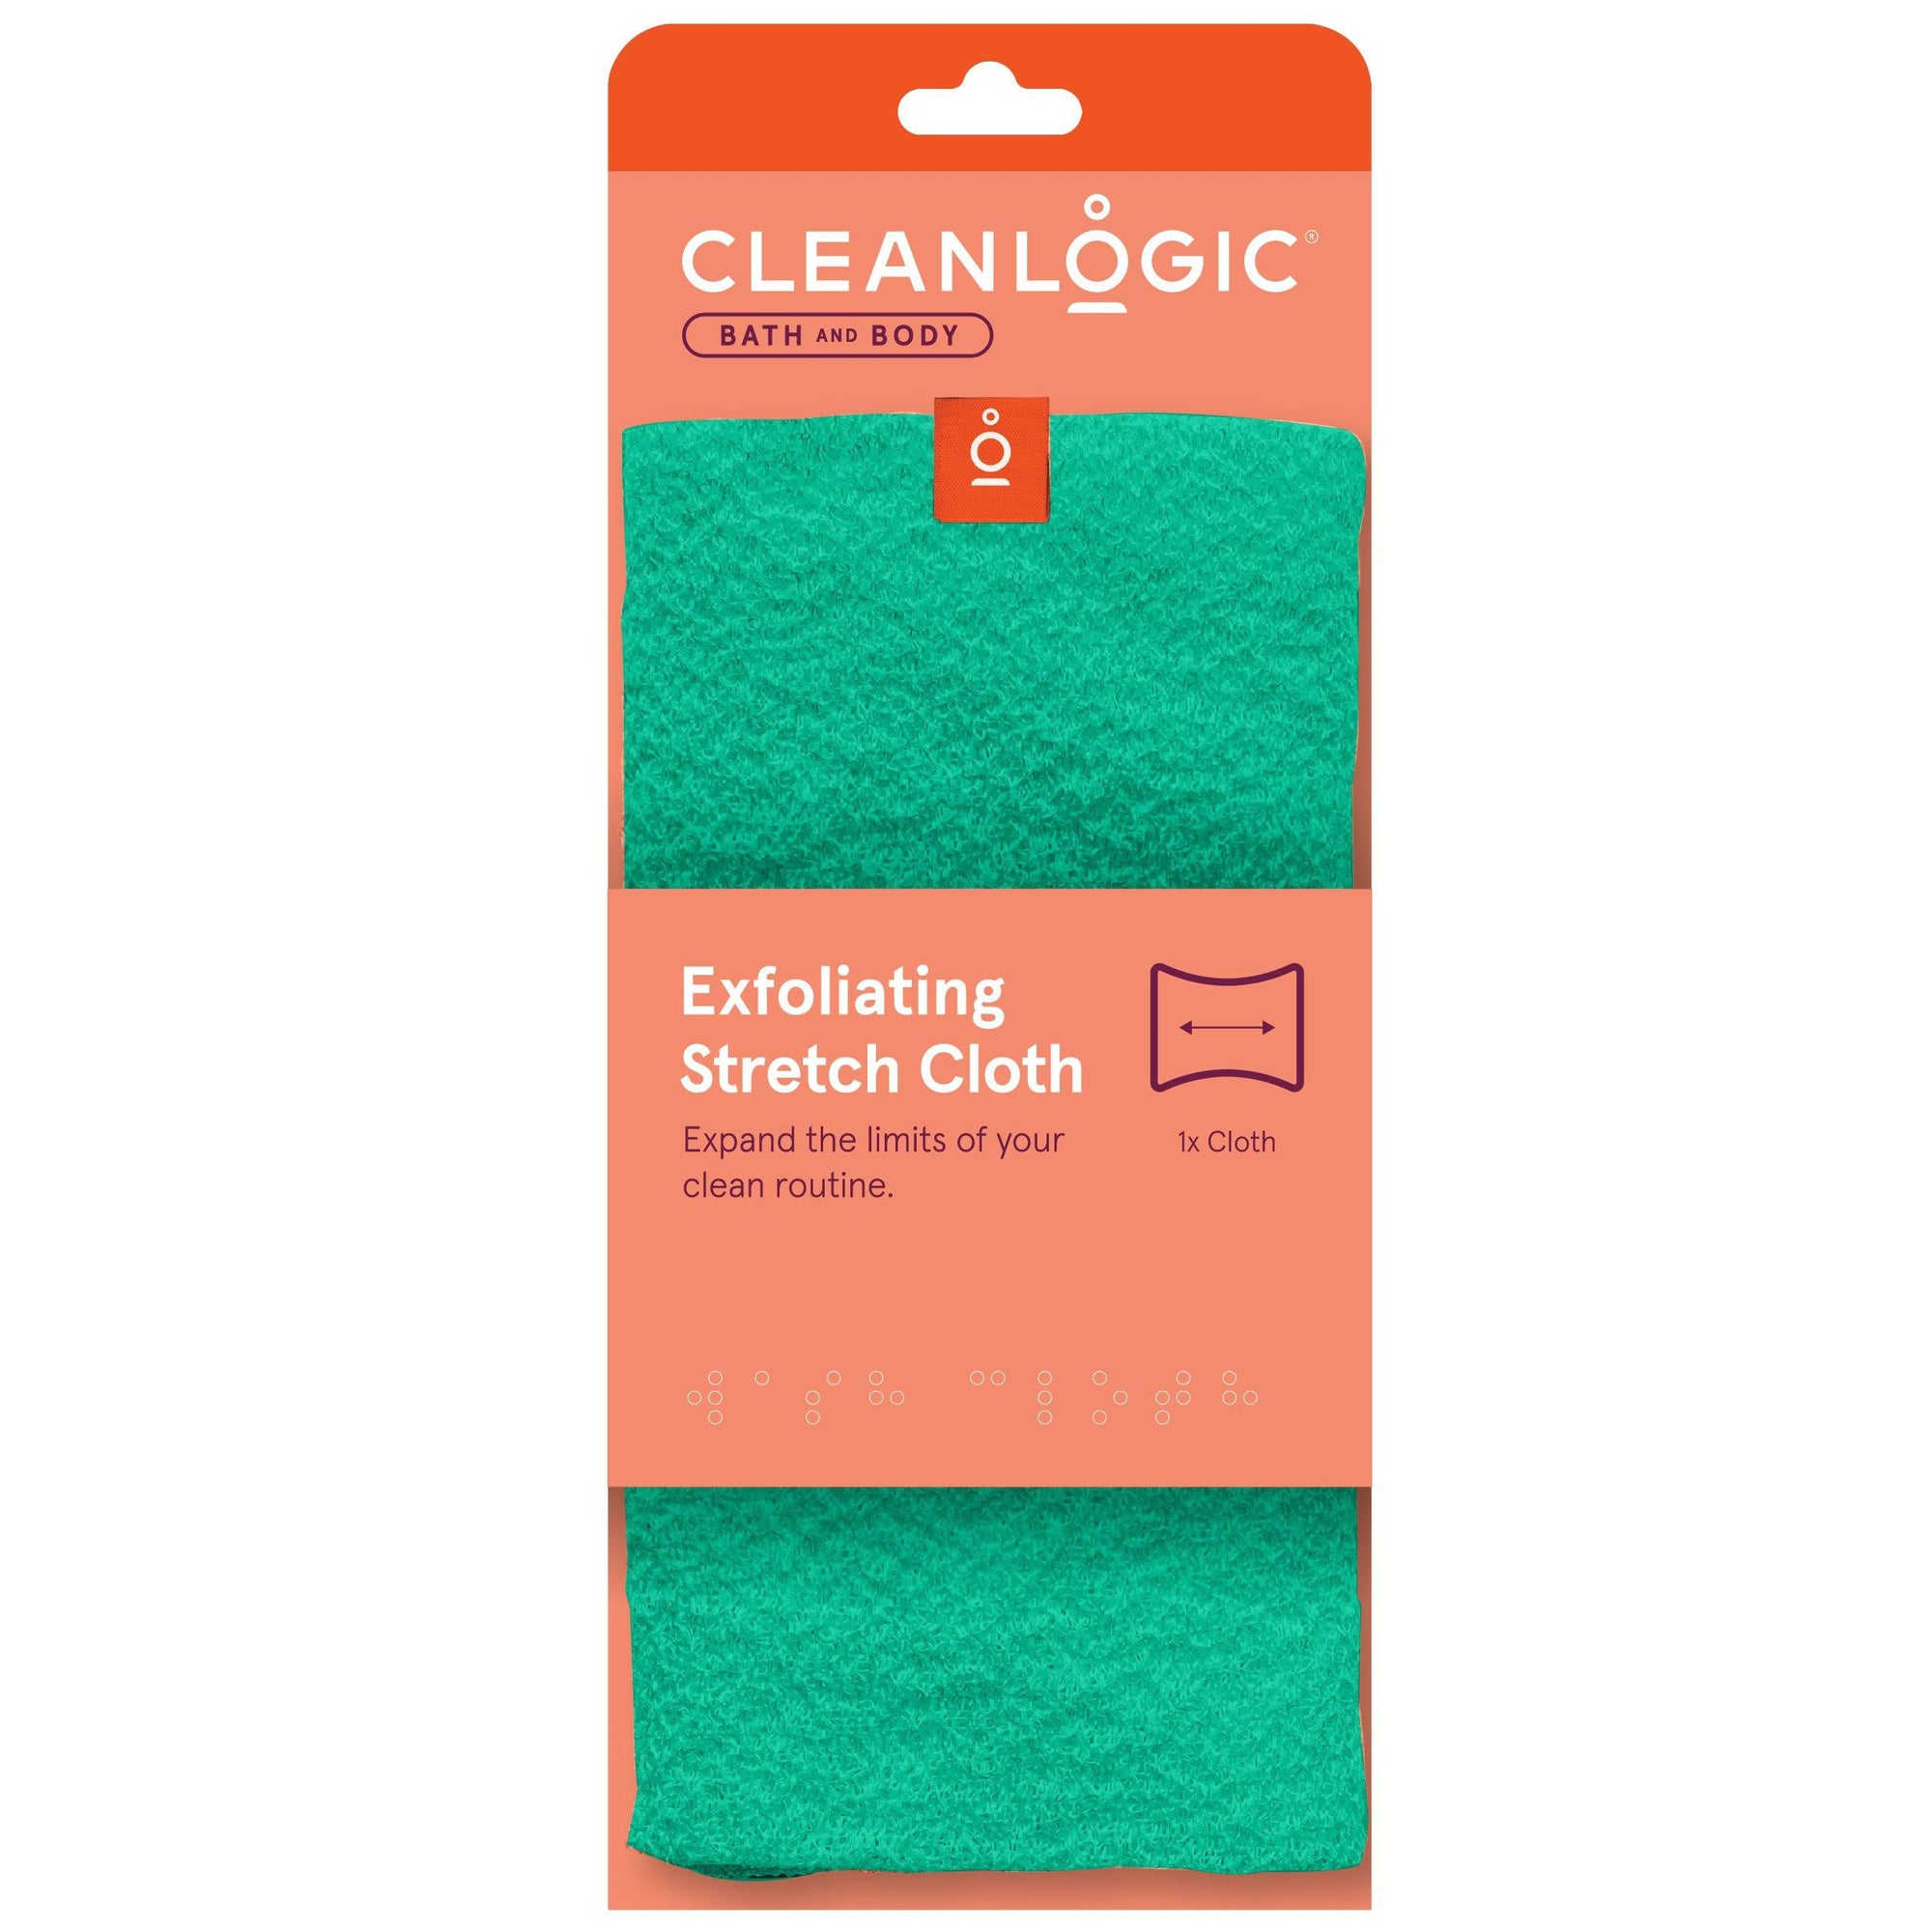 Cleanlogic Exfoliating Stretch Cloth